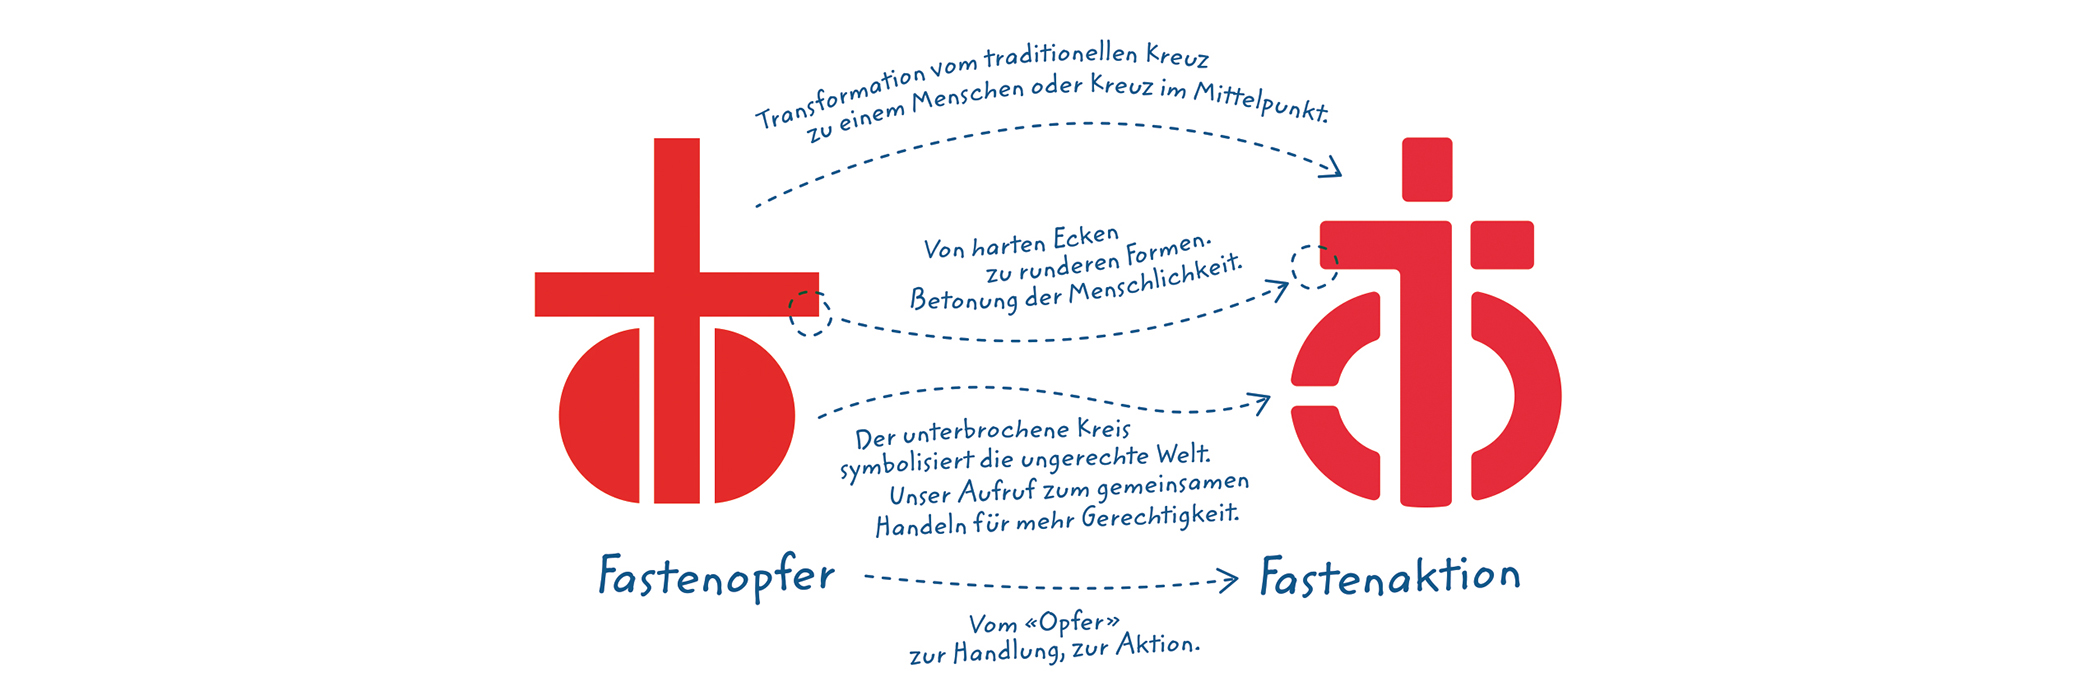 Die Grafik erklärt der Wandel der neuen Marke der Fastenaktion hin zur Fastenaktion.